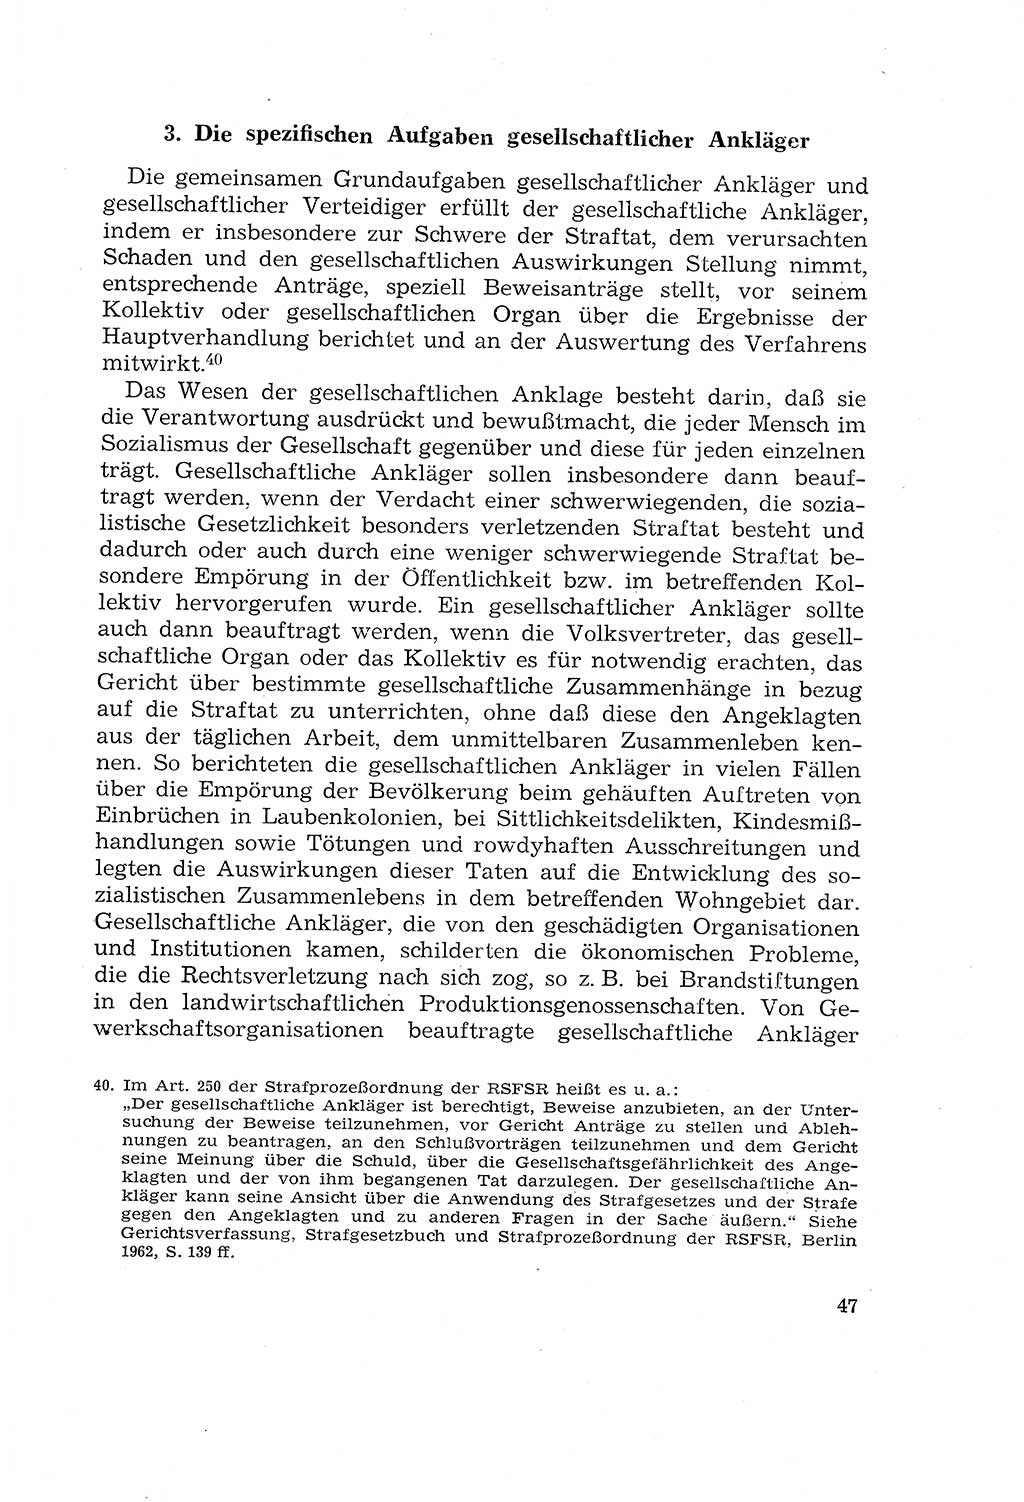 Die Mitwirkung der Werktätigen am Strafverfahren [Deutsche Demokratische Republik (DDR)] 1966, Seite 47 (Mitw. Str.-Verf. DDR 1966, S. 47)